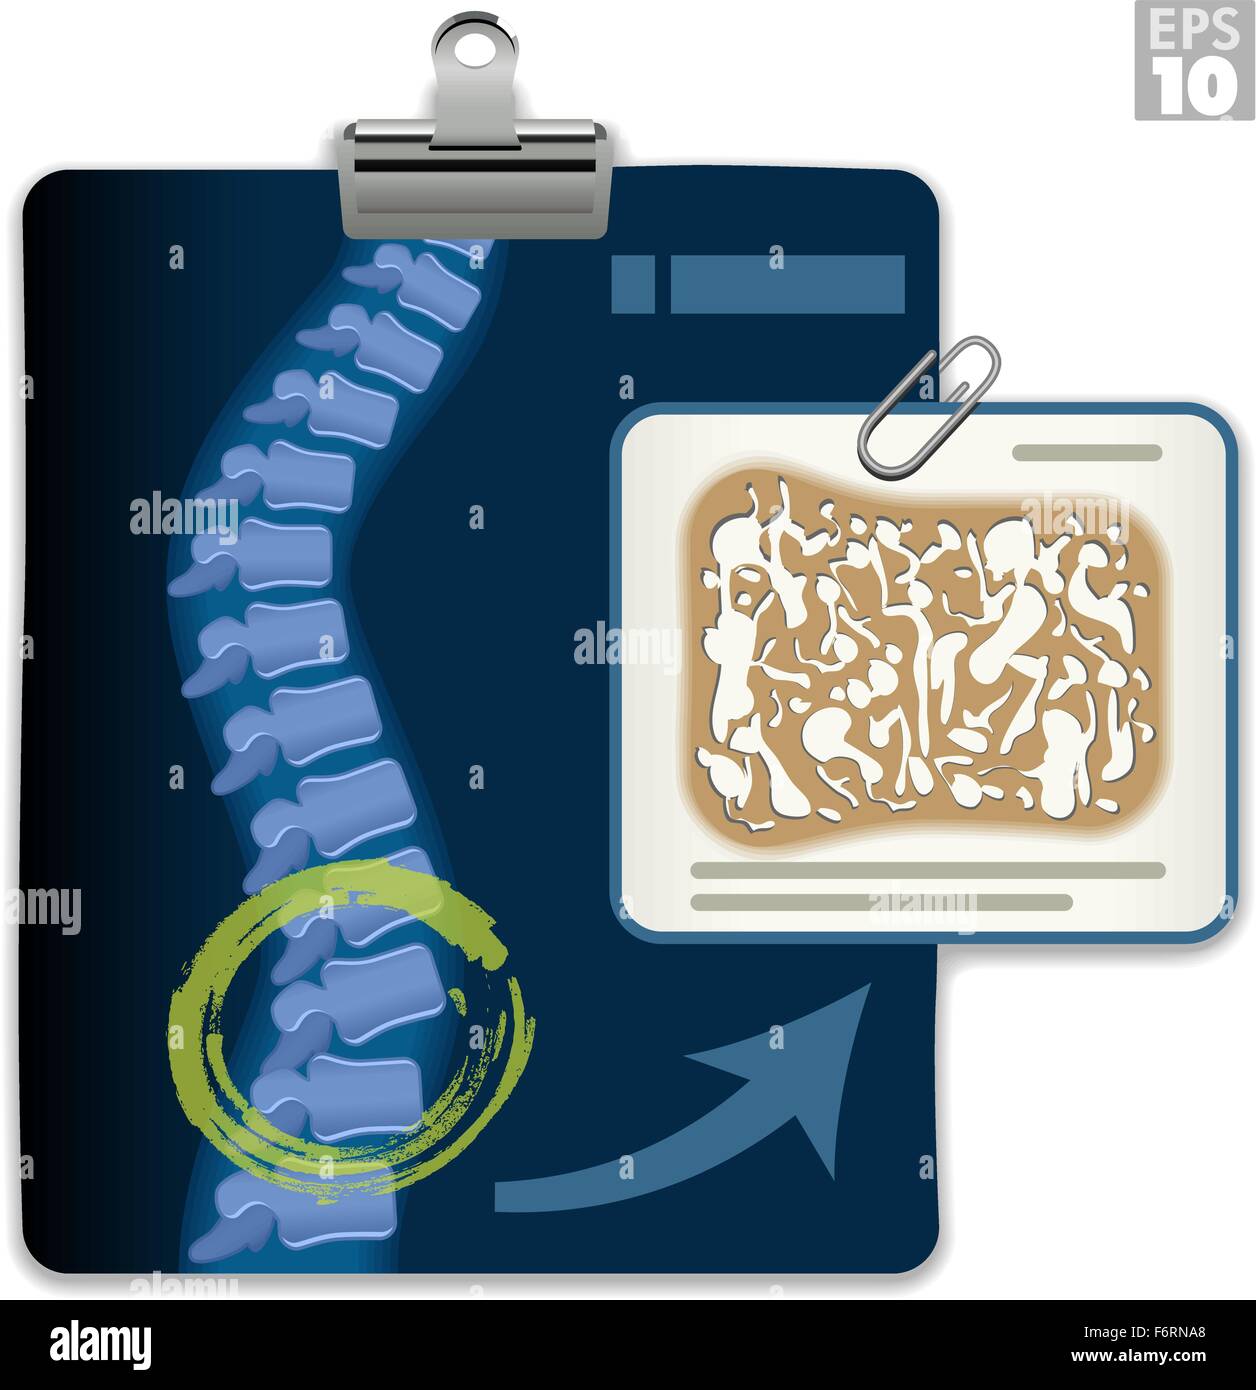 X-ray zeigt Osteoporose vertebrale Spalte Ergebnisse mit fragilen Knochenstruktur. Stock Vektor